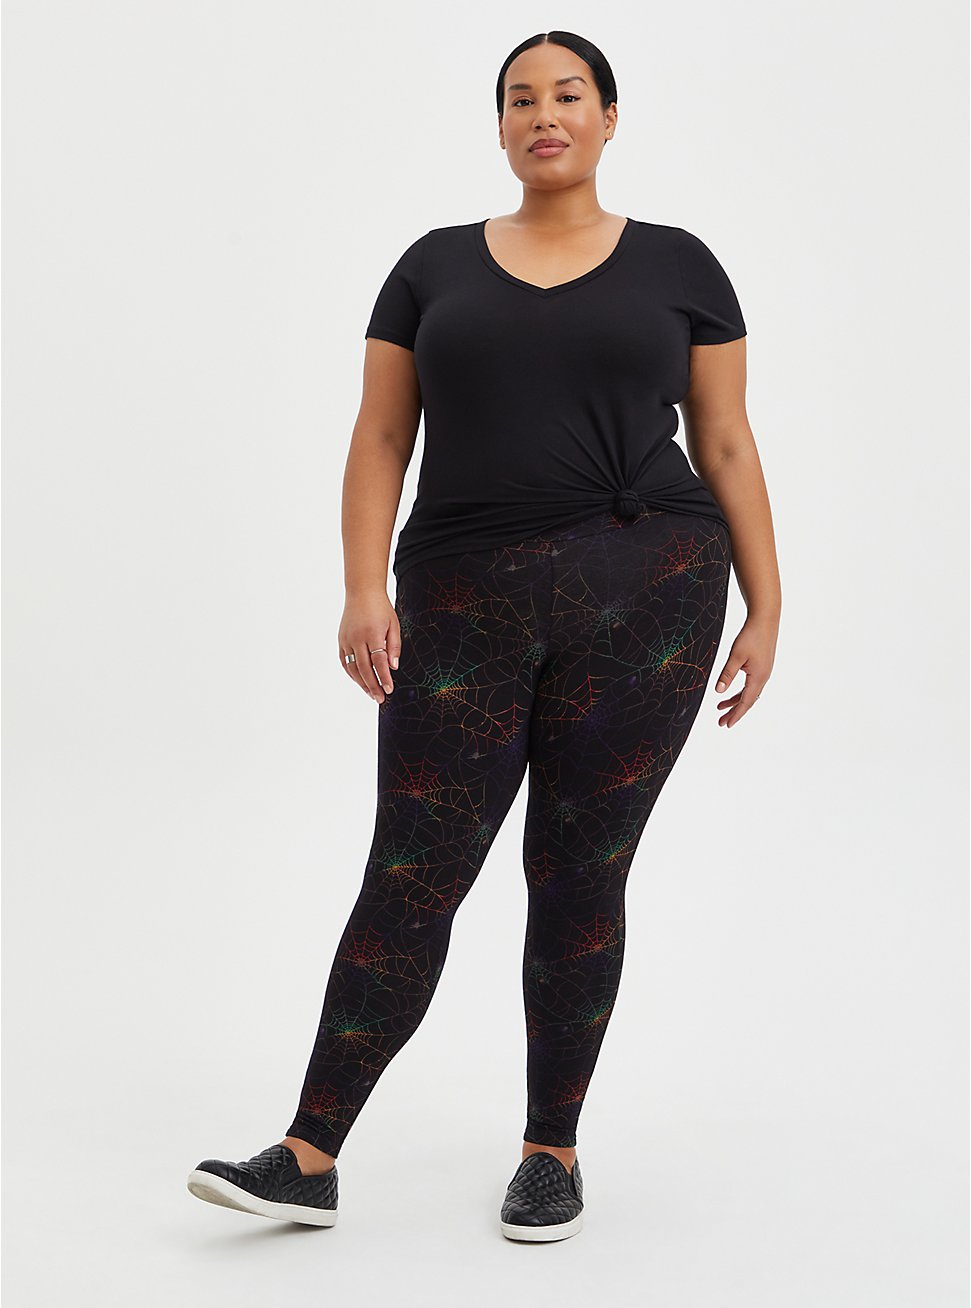 Plus Size Premium Legging - Rainbow Web Print Black, MULTI, hi-res